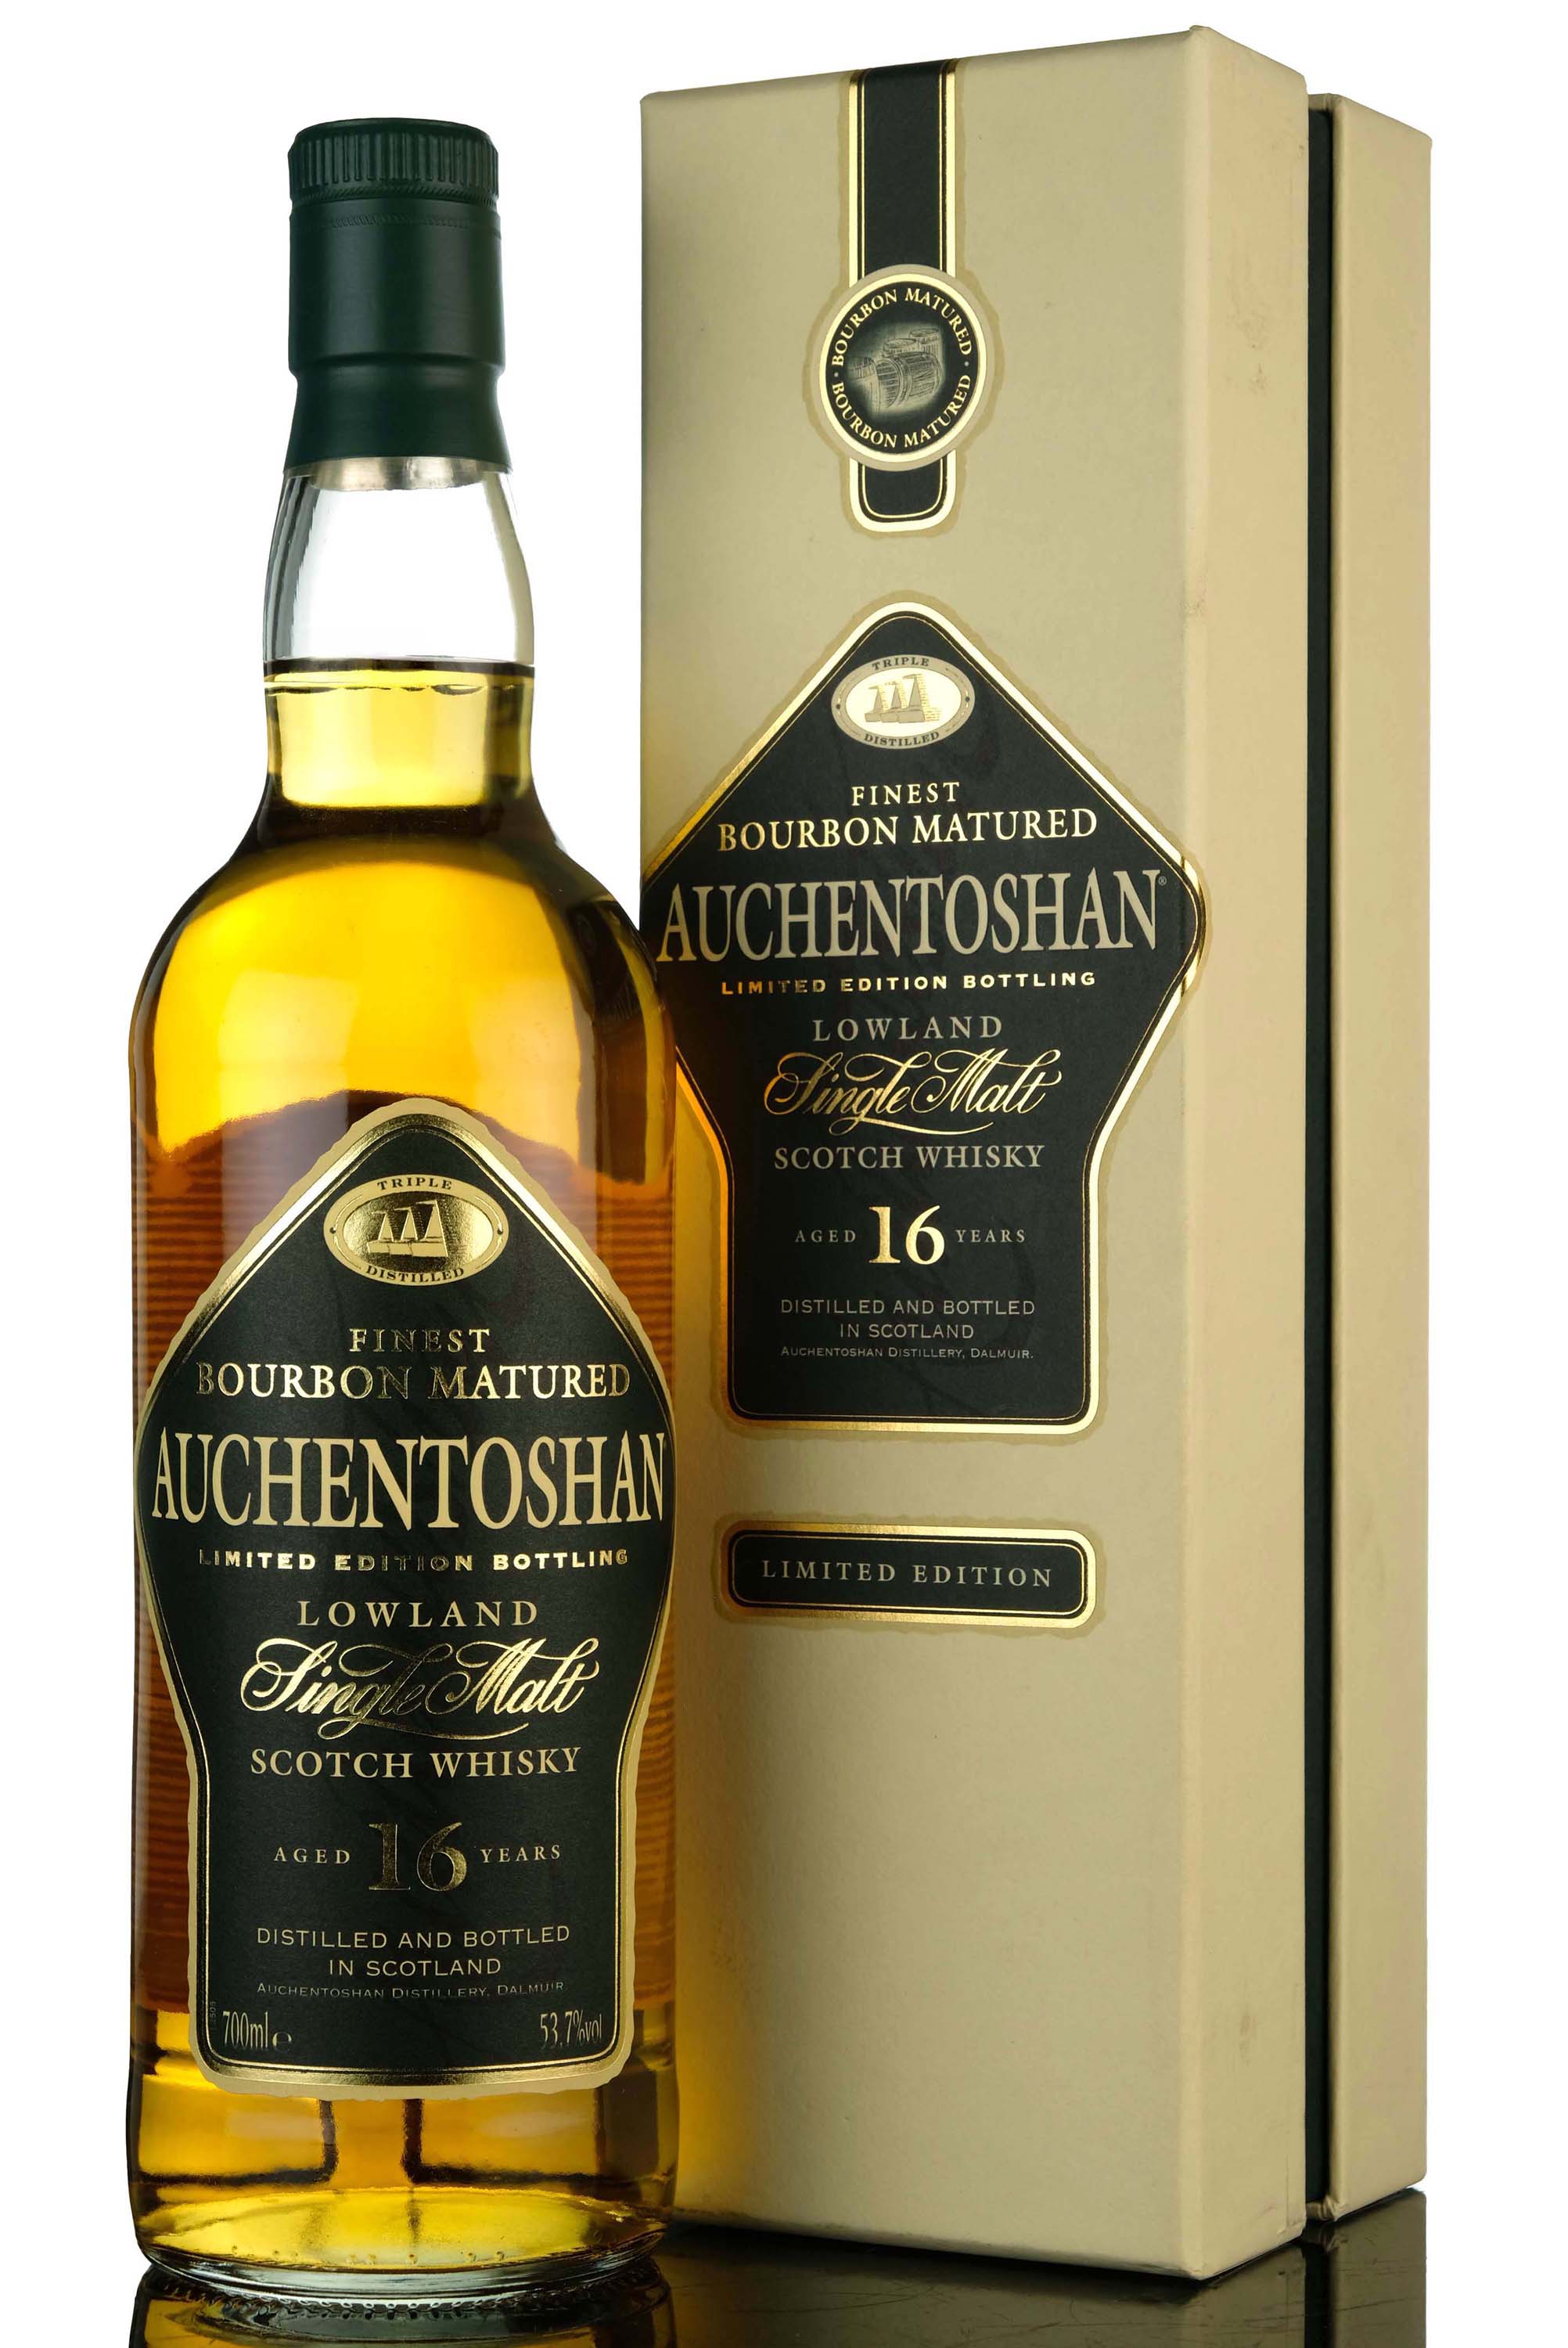 Auchentoshan 16 Year Old - Bourbon Matured - 2007 Release